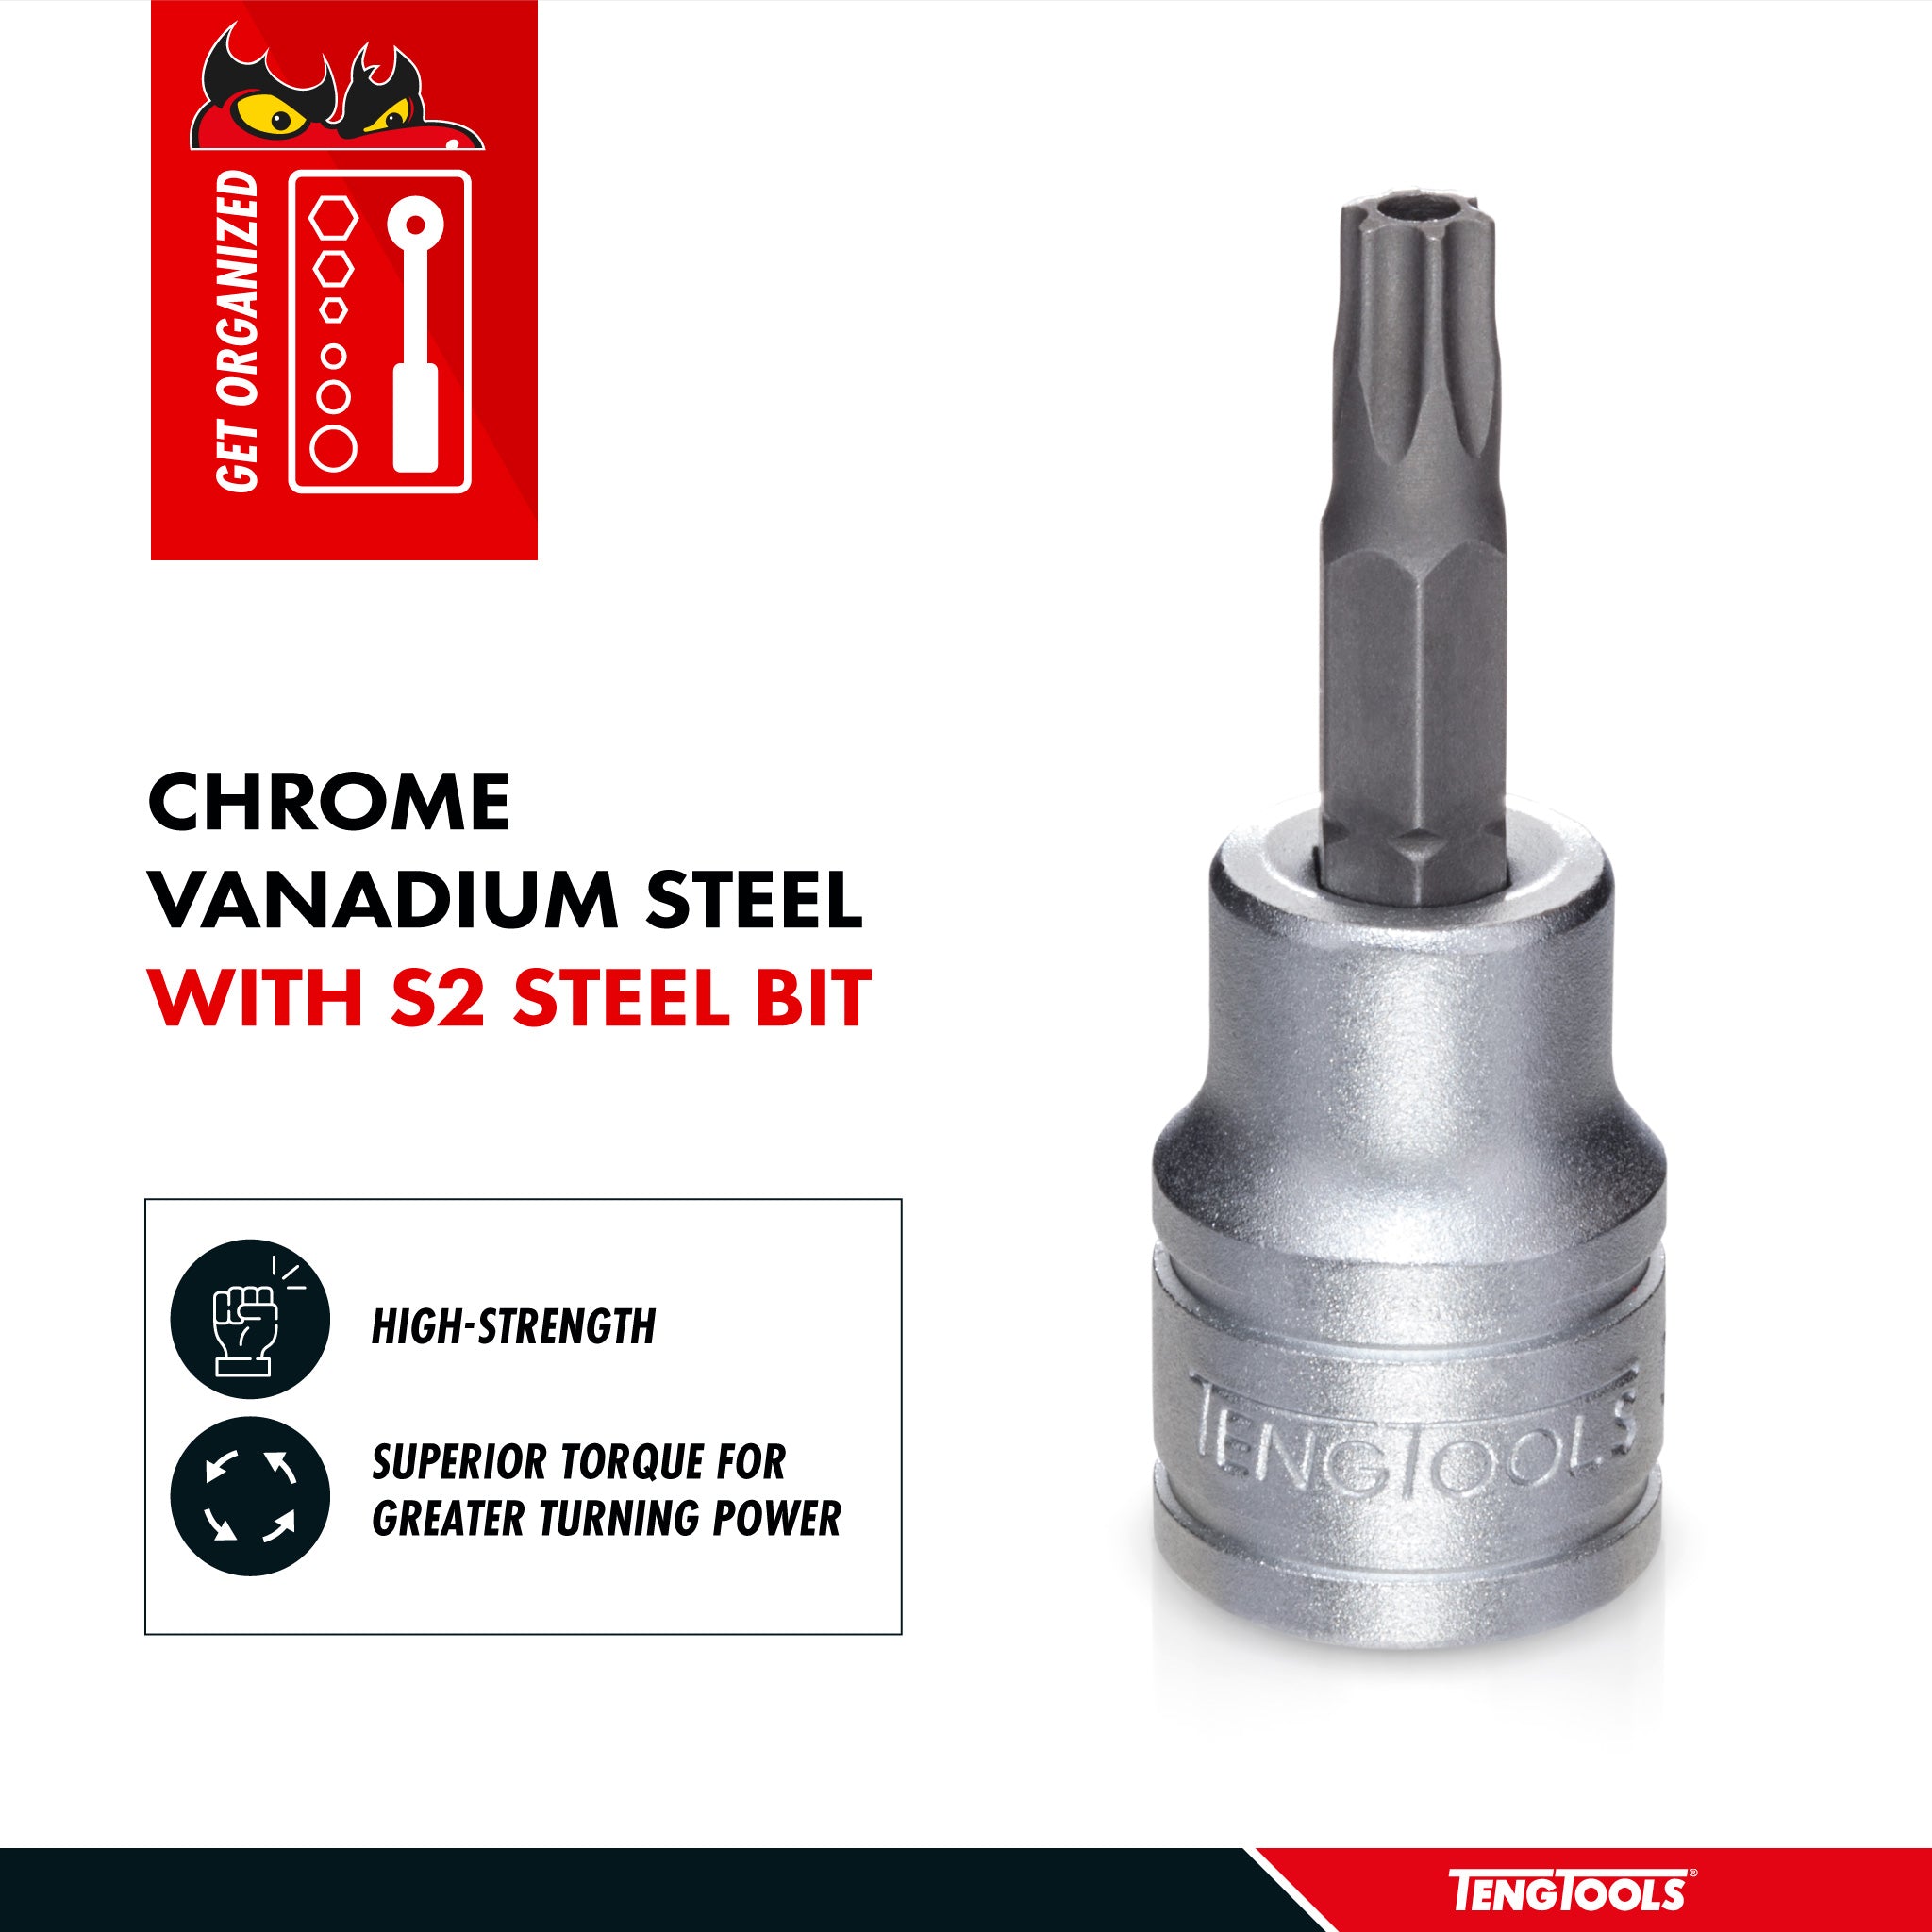 Teng Tools 1/2 Inch Drive Tamper Proof Torx TPX Chrome Vanadium Sockets - TPX50